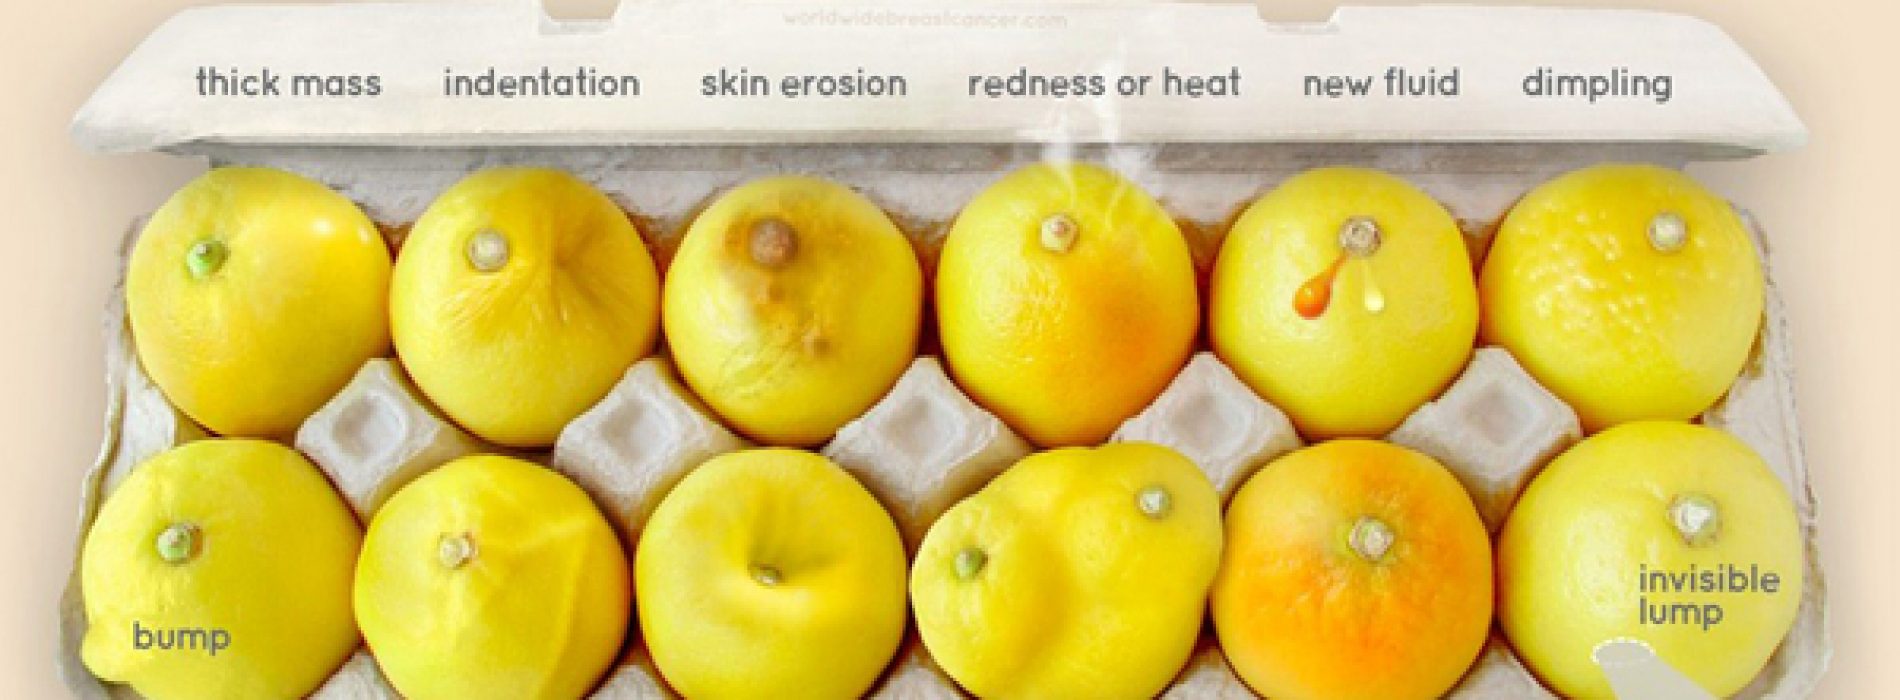 Herken je deze tekenen van borst kanker? Deze foto van citroenen kan levens redden!